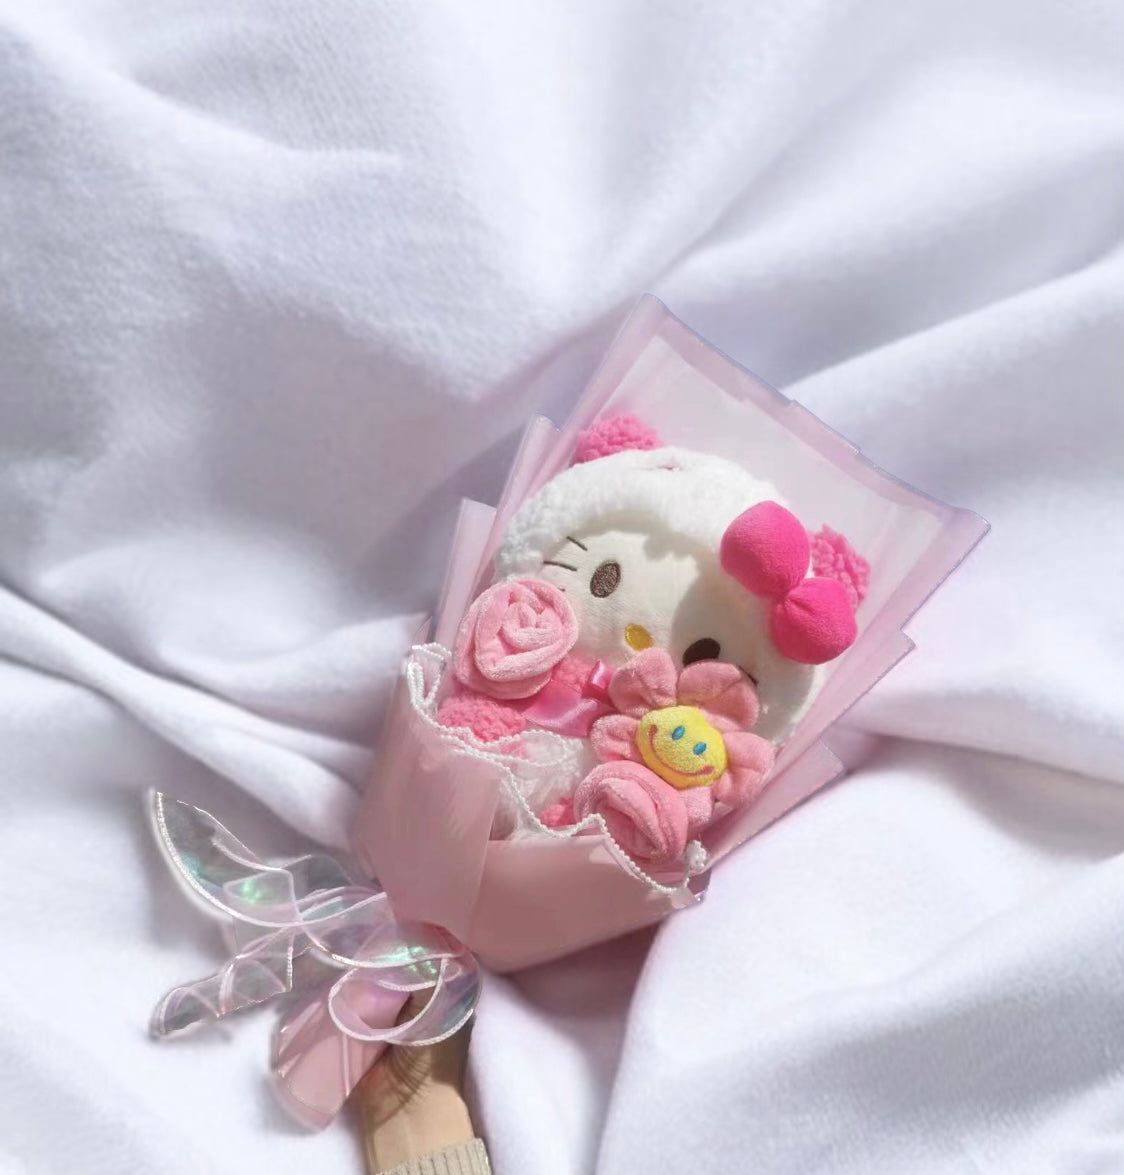 Sanrio Plush Doll Bouquet